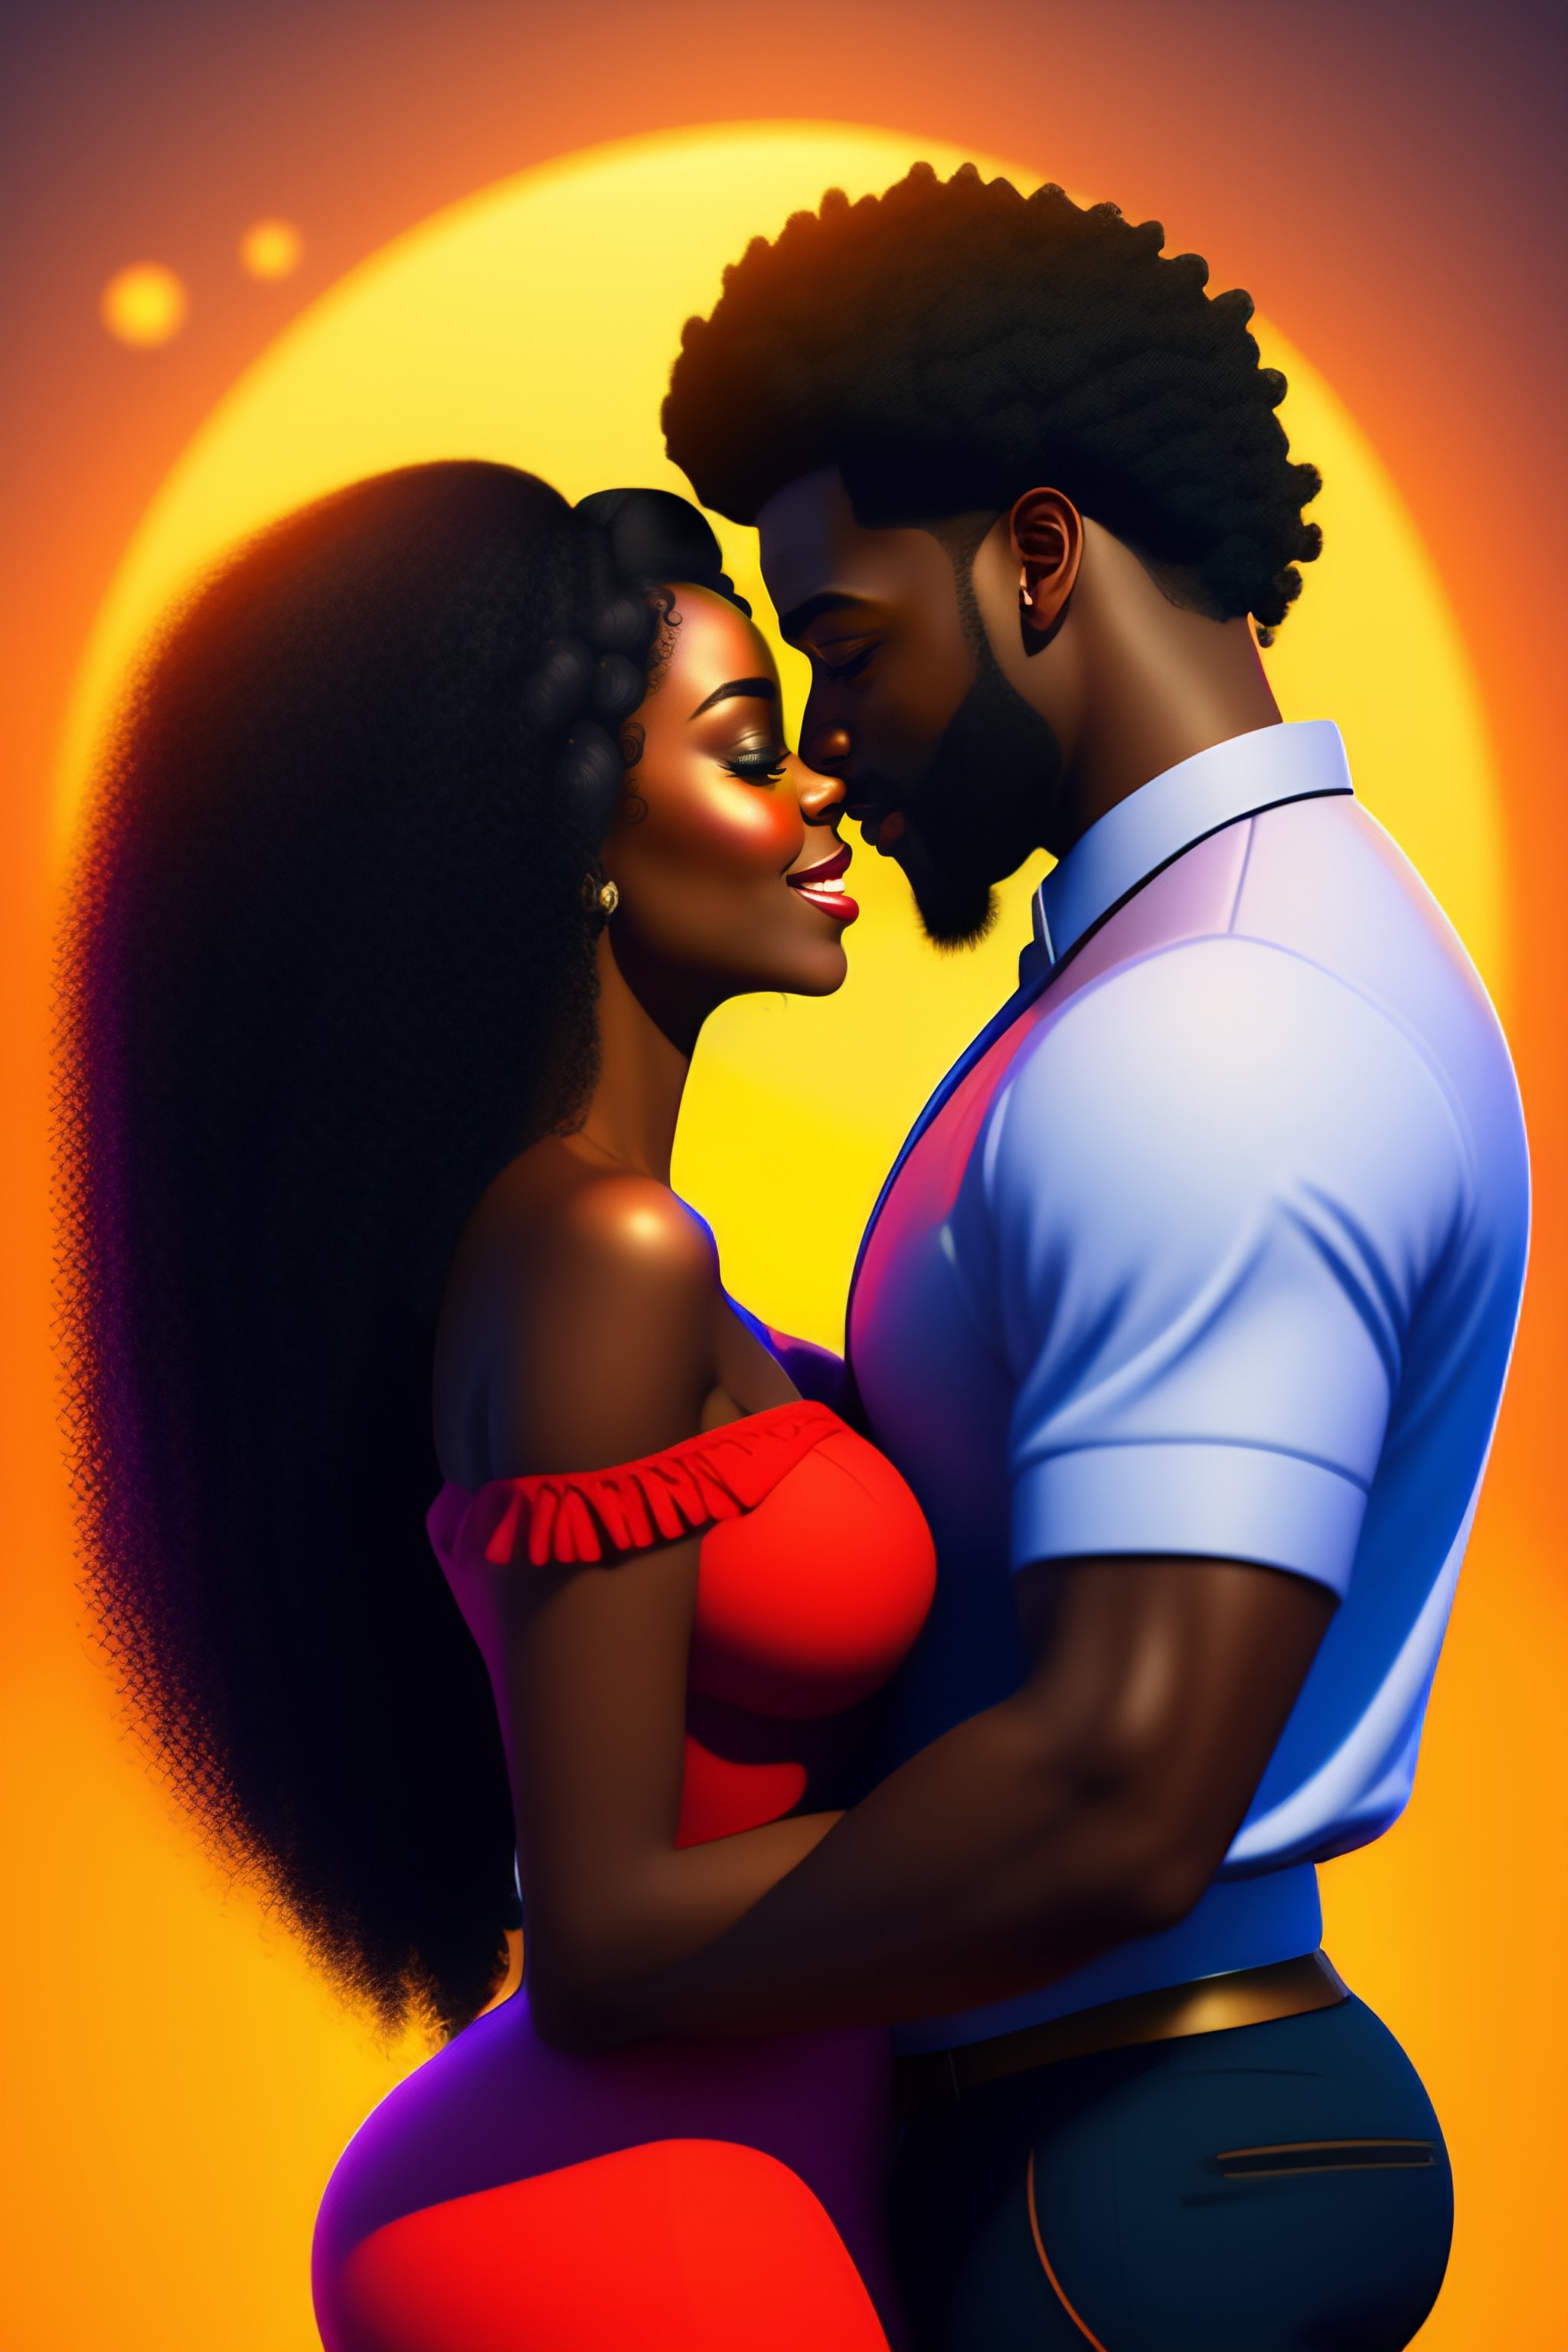 alfredo almanza recommends black couples cartoon pic